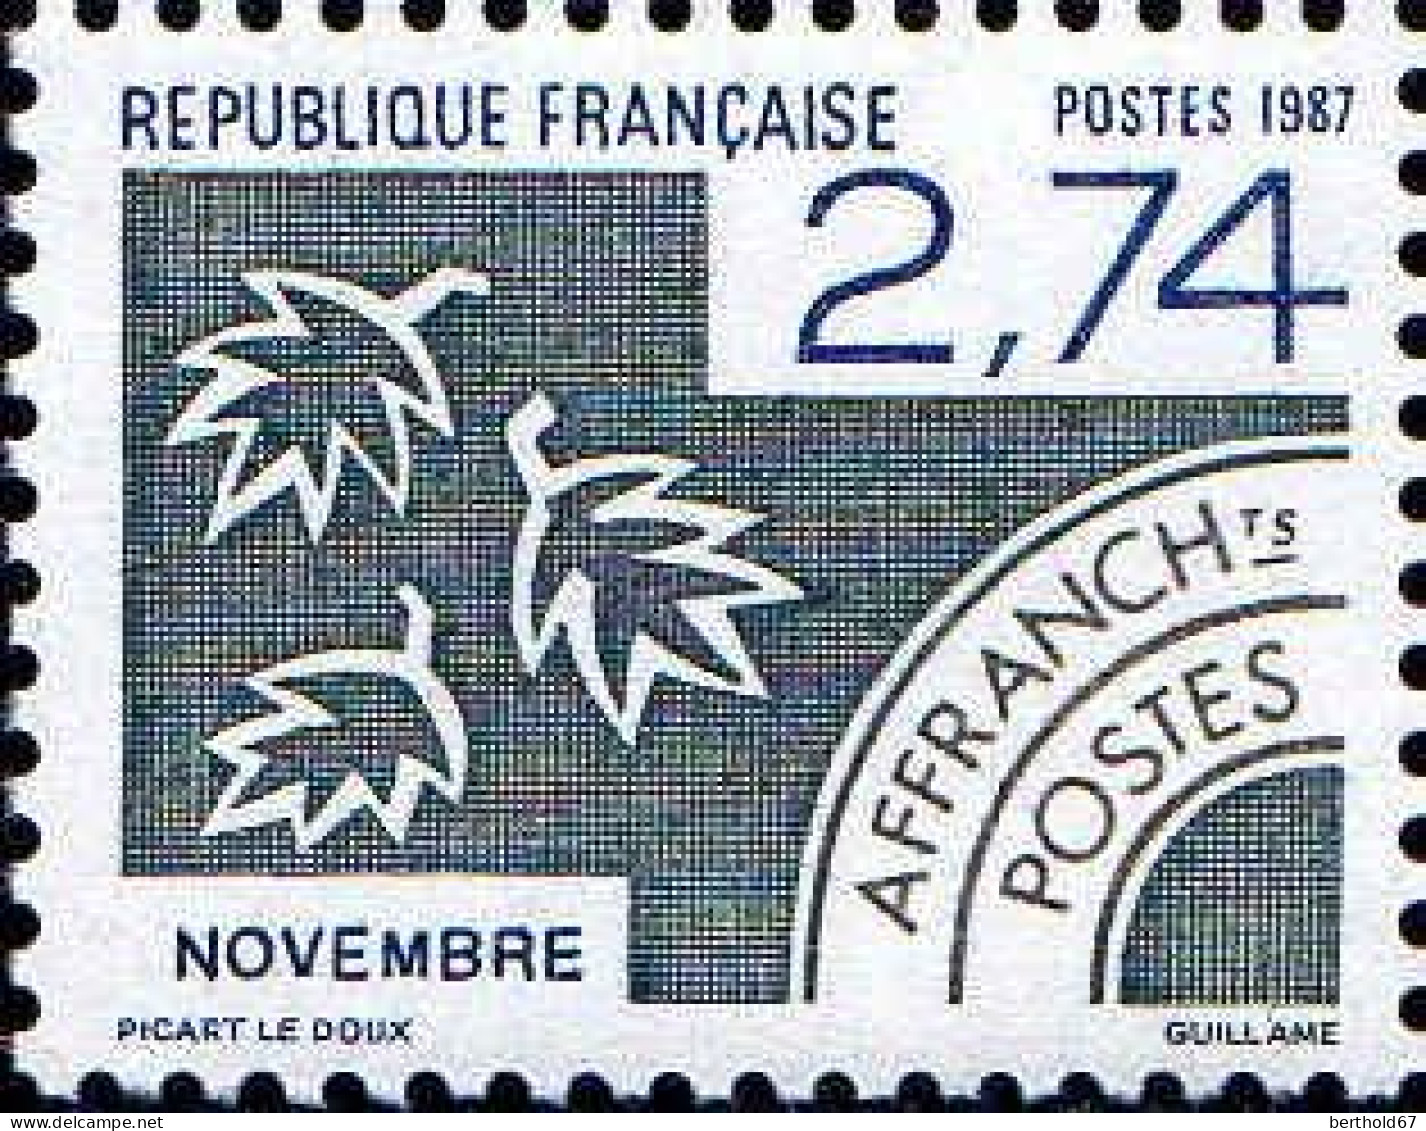 France Préo N** Yv:196 Mi:2590 Novembre - 1964-1988